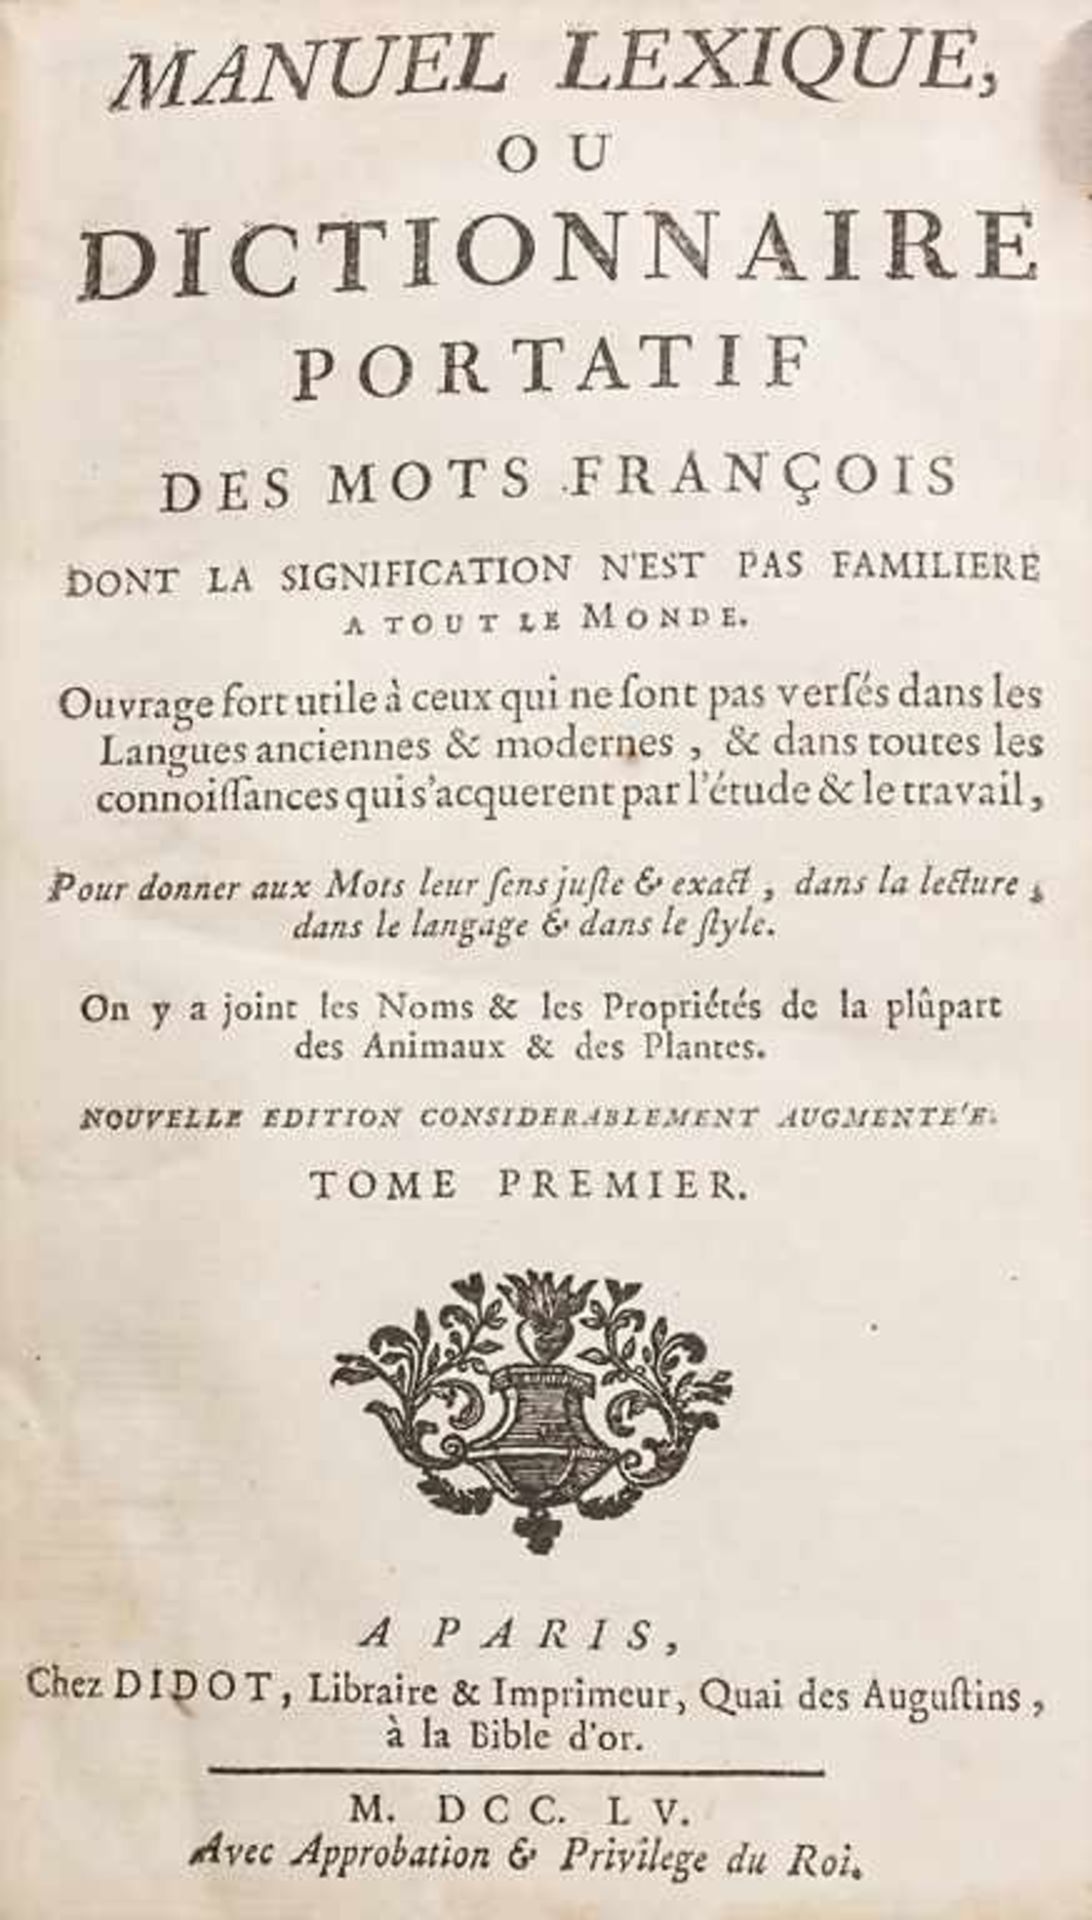 Manuel Lexique: Dictionnaire portatif des mots francois, Bde. 1 u 2, Paris, 1755